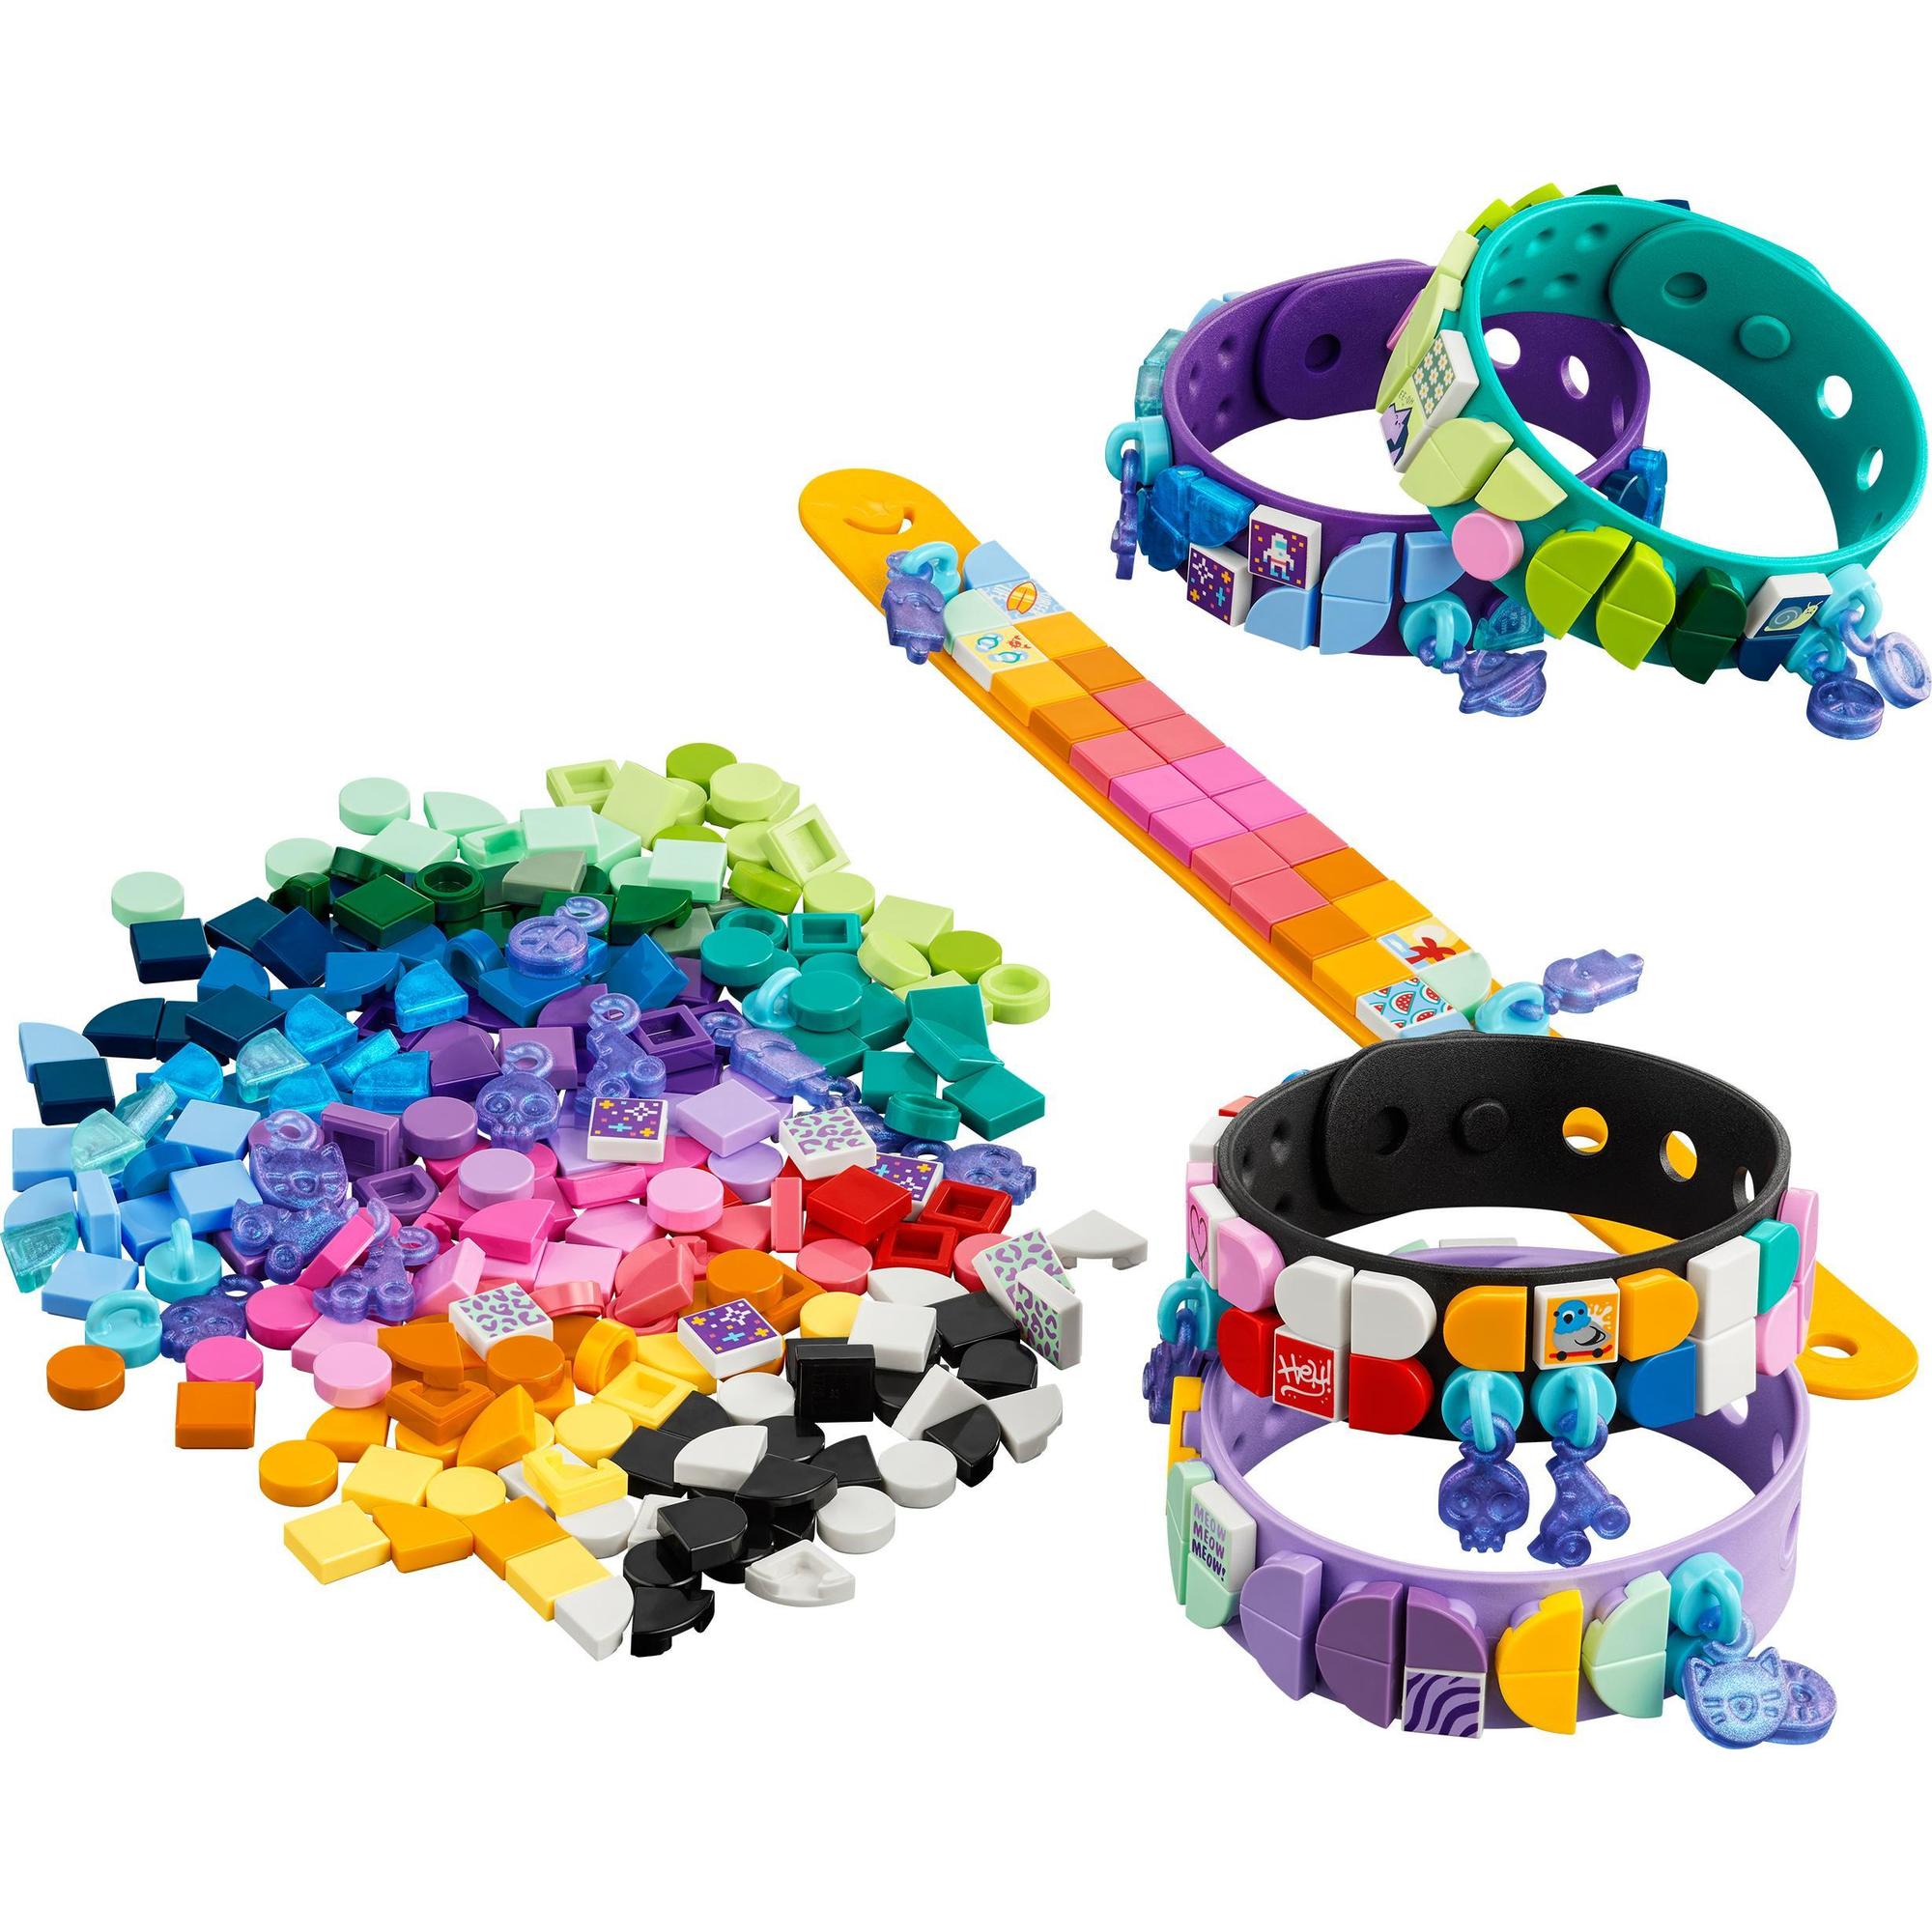 LEGO® | 41807 | Armbanddesign Kreativset